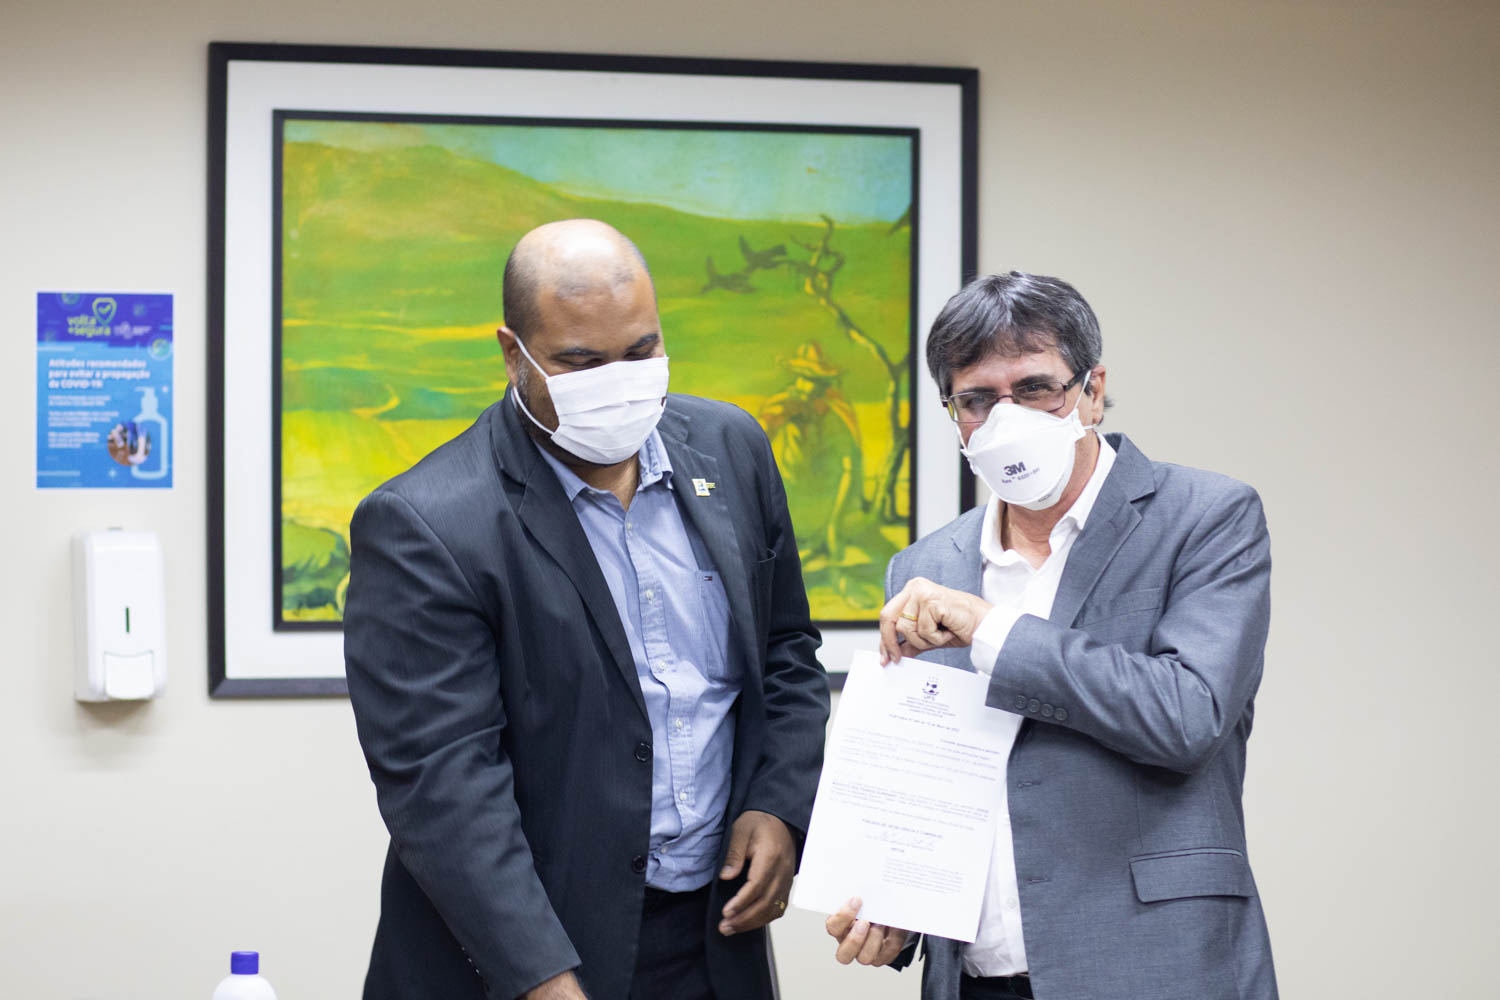 Reunião ocorreu como encontro informal, já que documentos são assinados eletronicamente. (Fotos: Pedro Ramos - Ascom UFS)